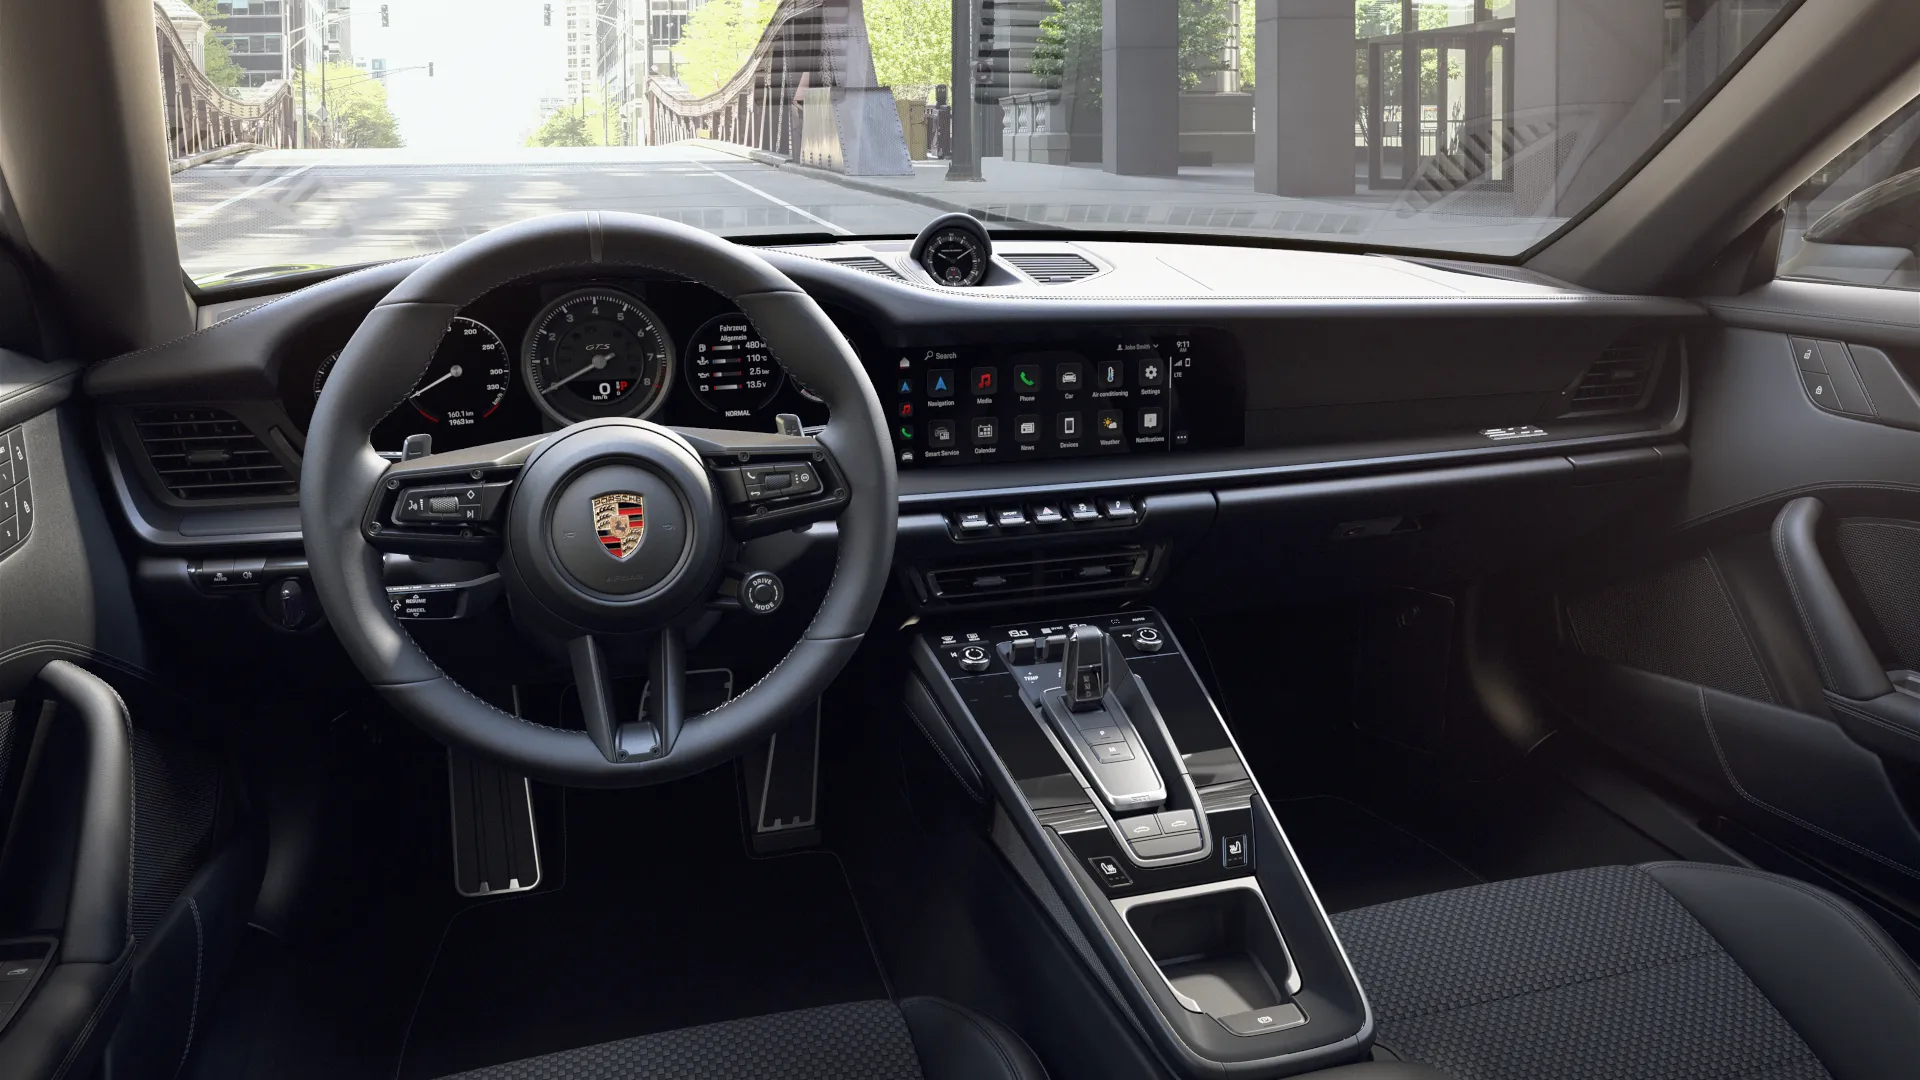 Interior view of 911 Edition 50 Years Porsche Design